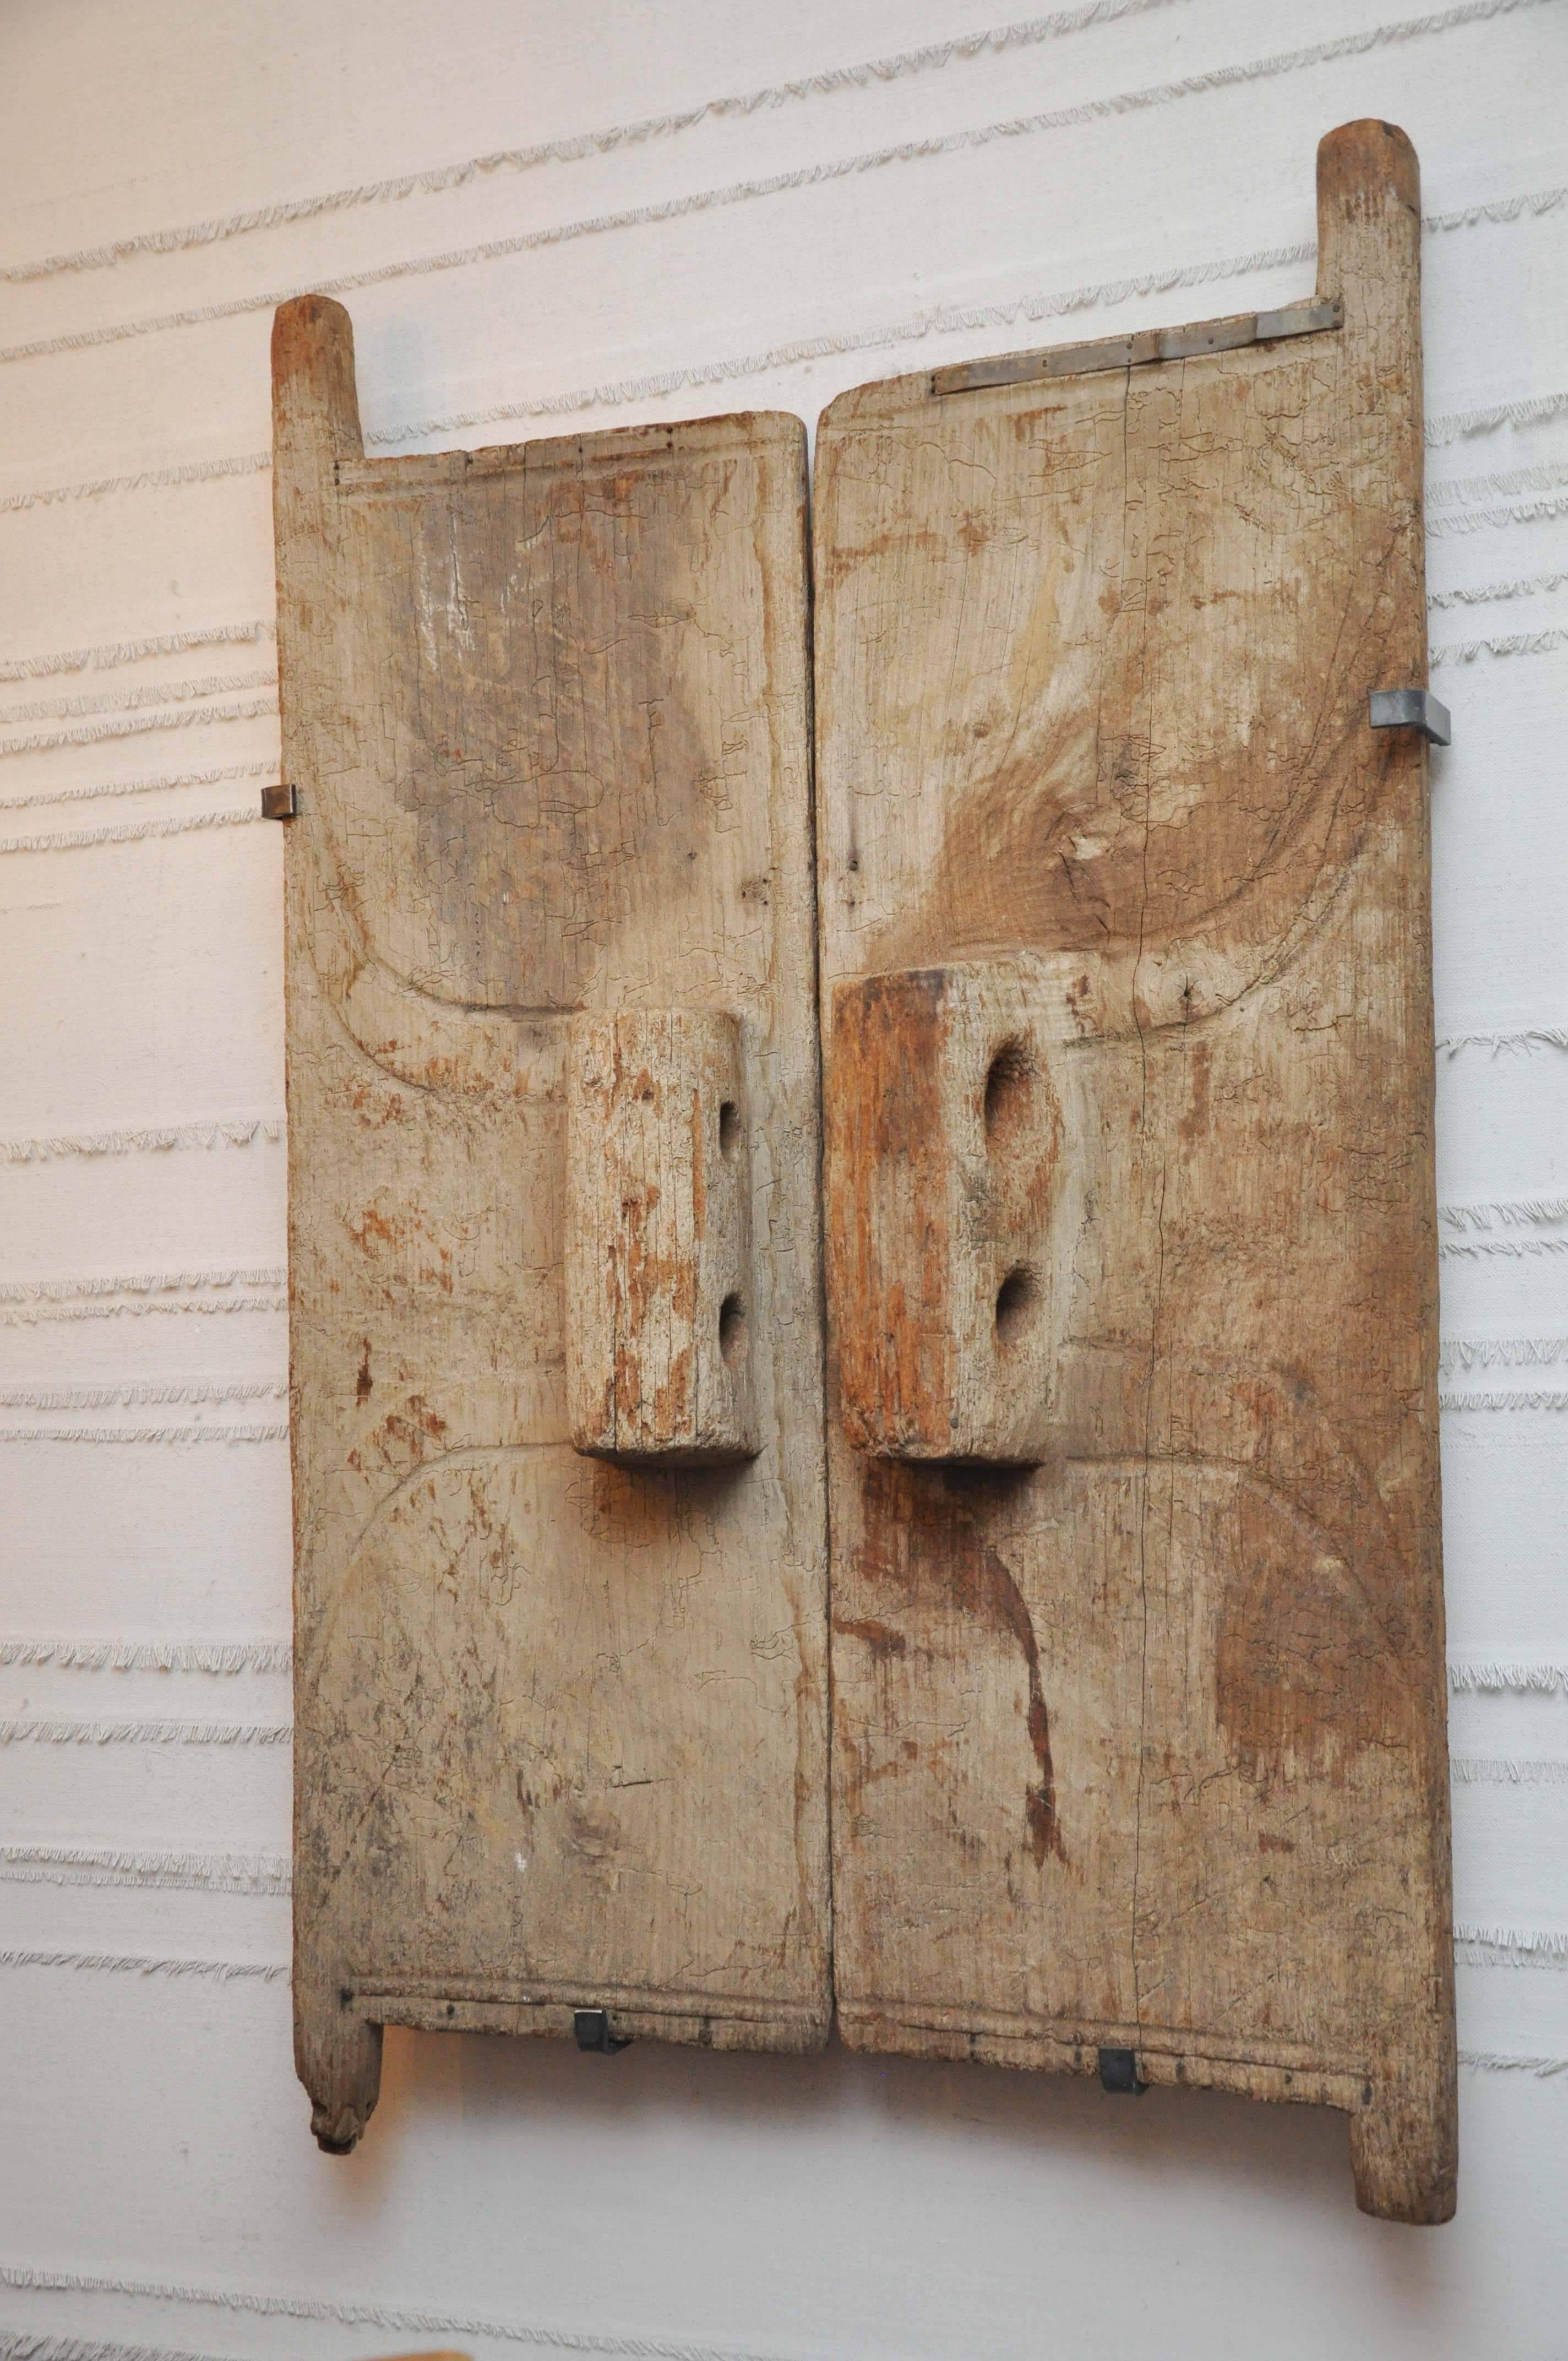 Portes de grenier Naga du 18e siècle. Ces belles et lourdes portes de grenier ont été trouvées au Nagaland. Ils étaient à l'origine situés à l'entrée d'un grenier. Les bâtiments étaient courts, d'où l'échelle des portes. 

le dispositif de